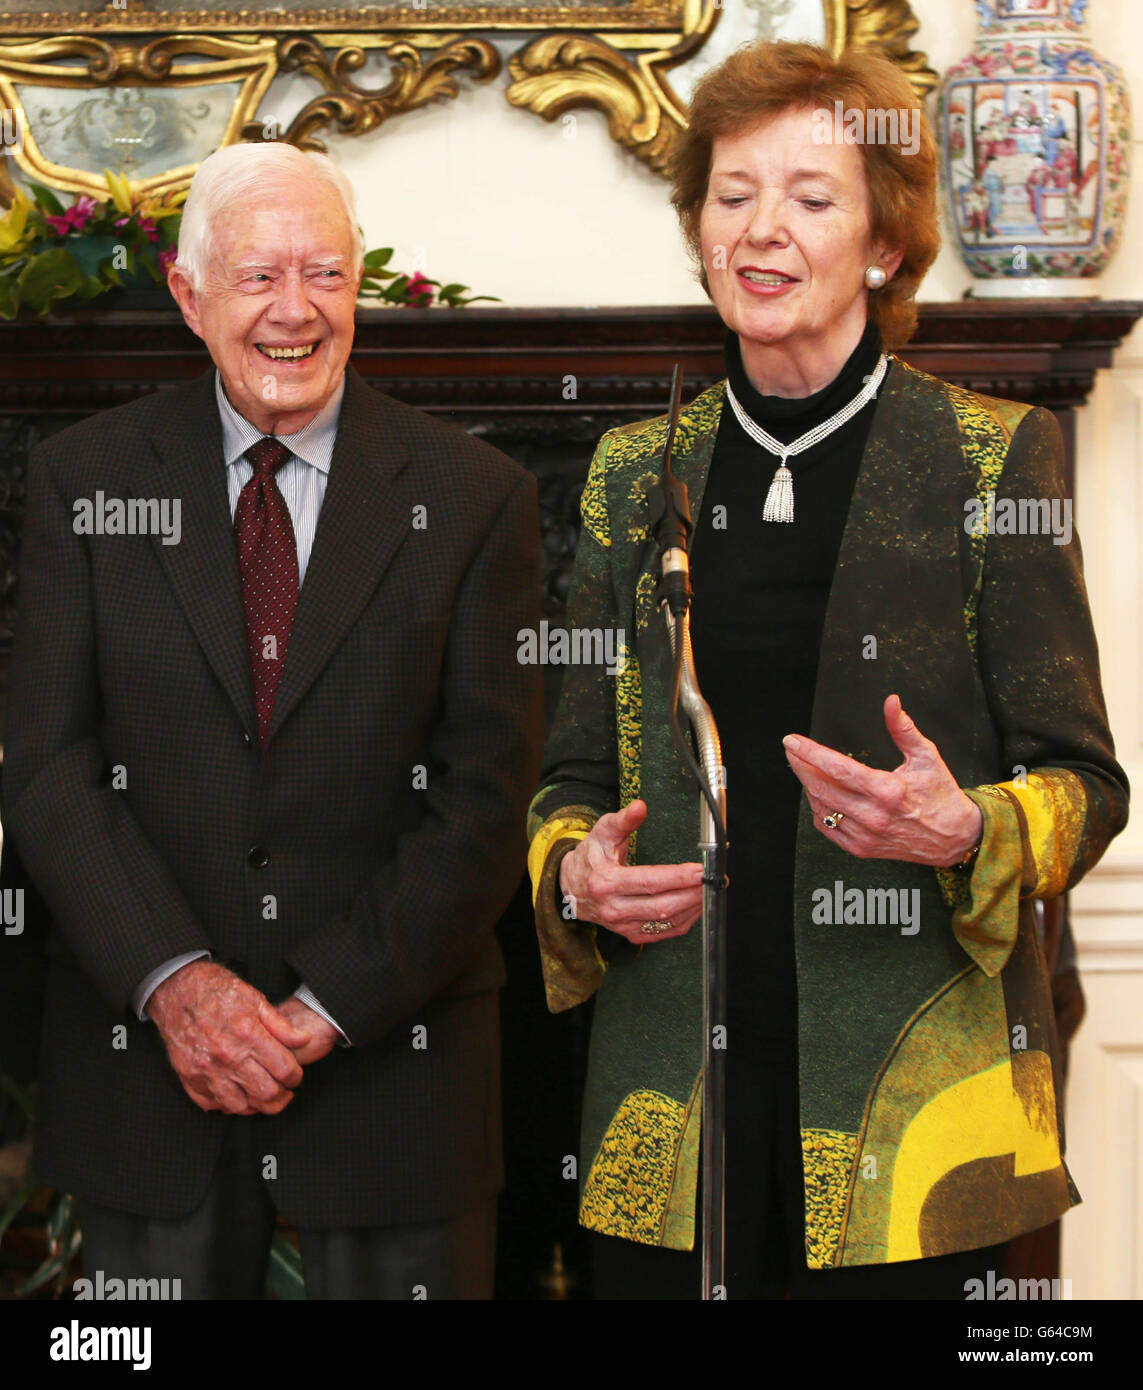 Elders, der ehemalige US-Präsident Jimmy Carter und die ehemalige irische Präsidentin Mary Robinson (rechts) bei einer Pressekonferenz im Iveagh House, Dublin. Stockfoto